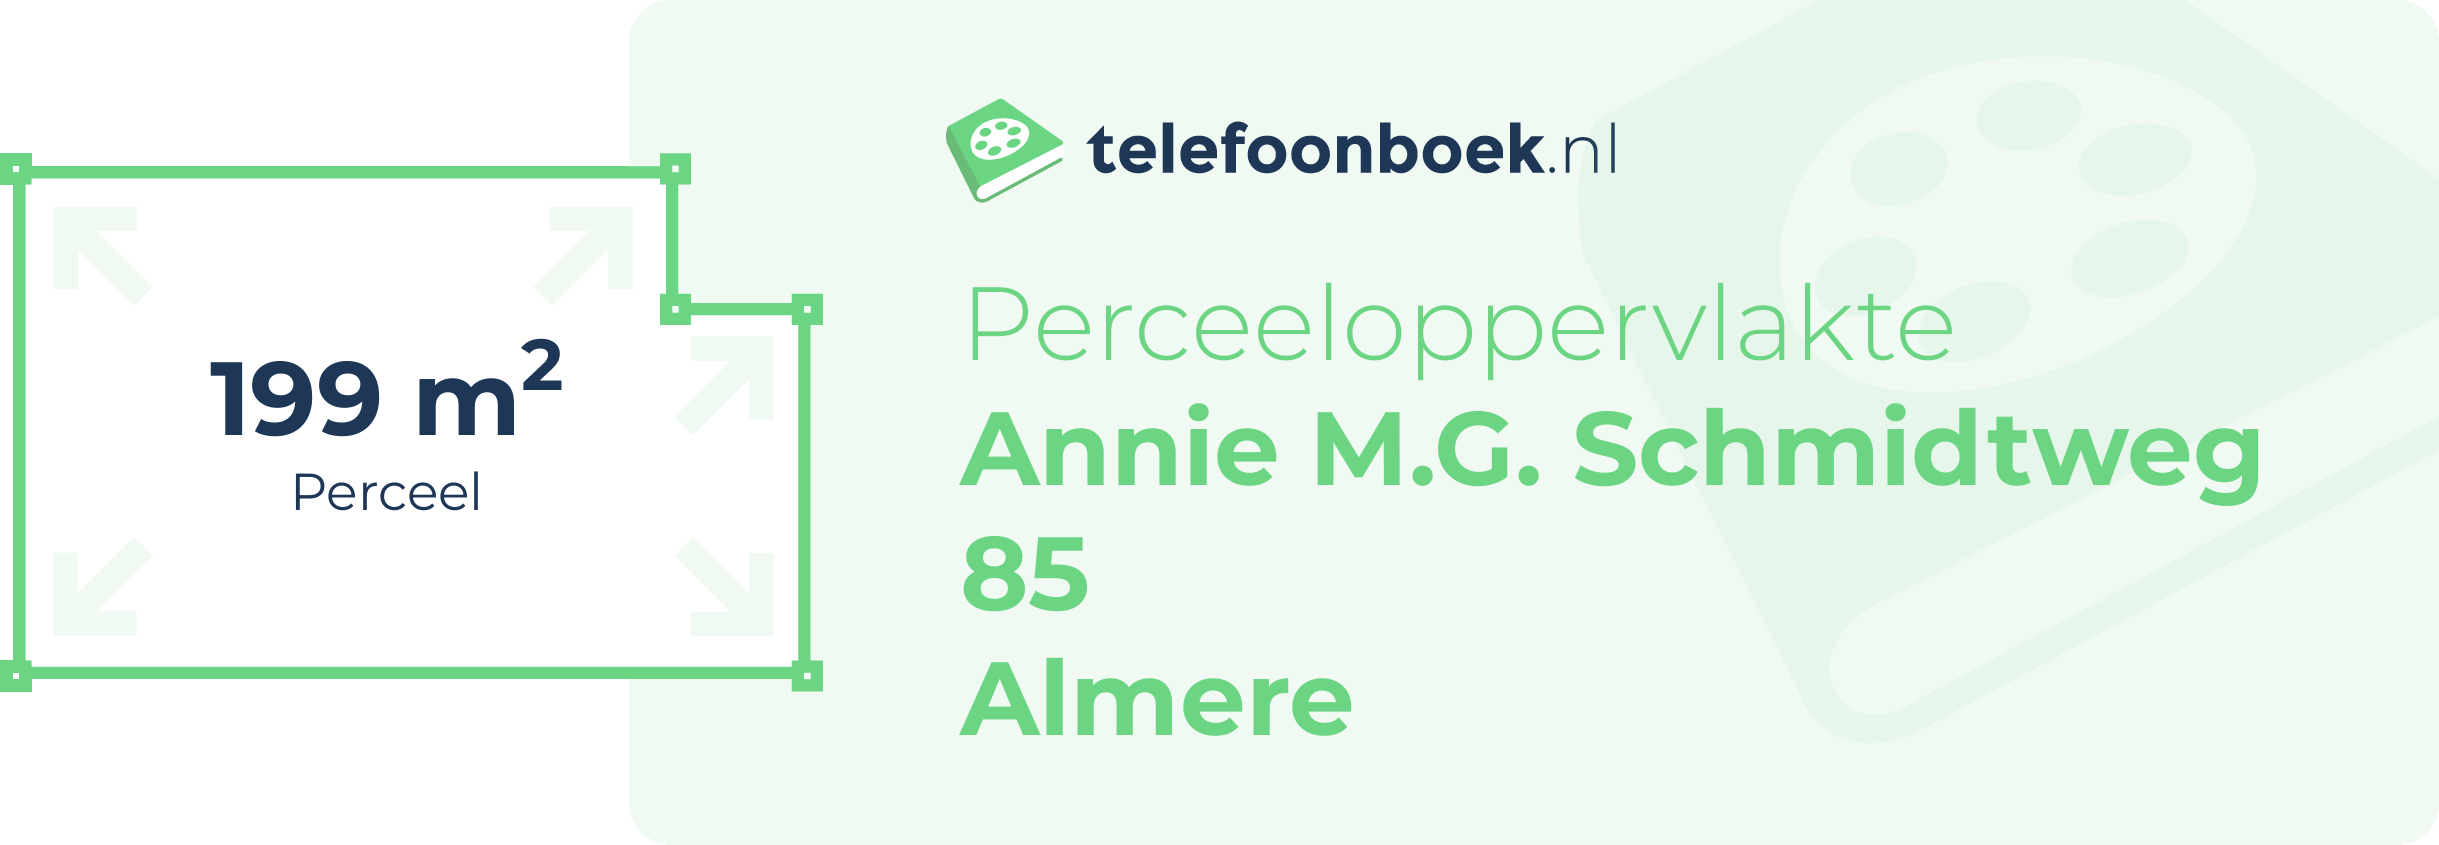 Perceeloppervlakte Annie M.G. Schmidtweg 85 Almere